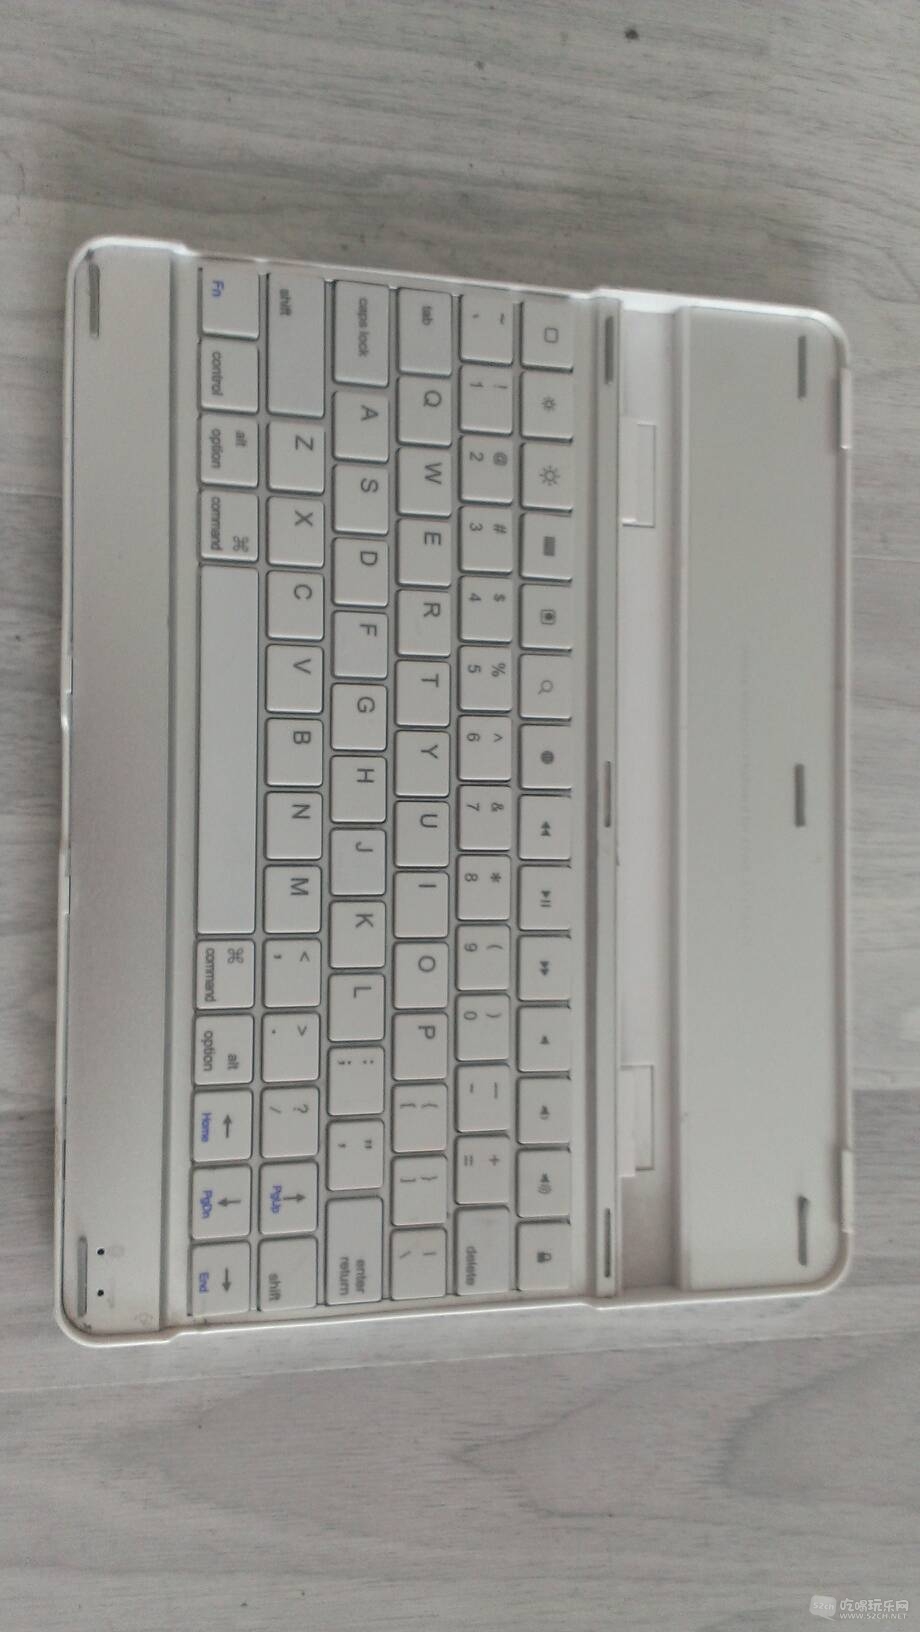 原装苹果\/Apple 1314无线蓝牙键盘,英文标准版